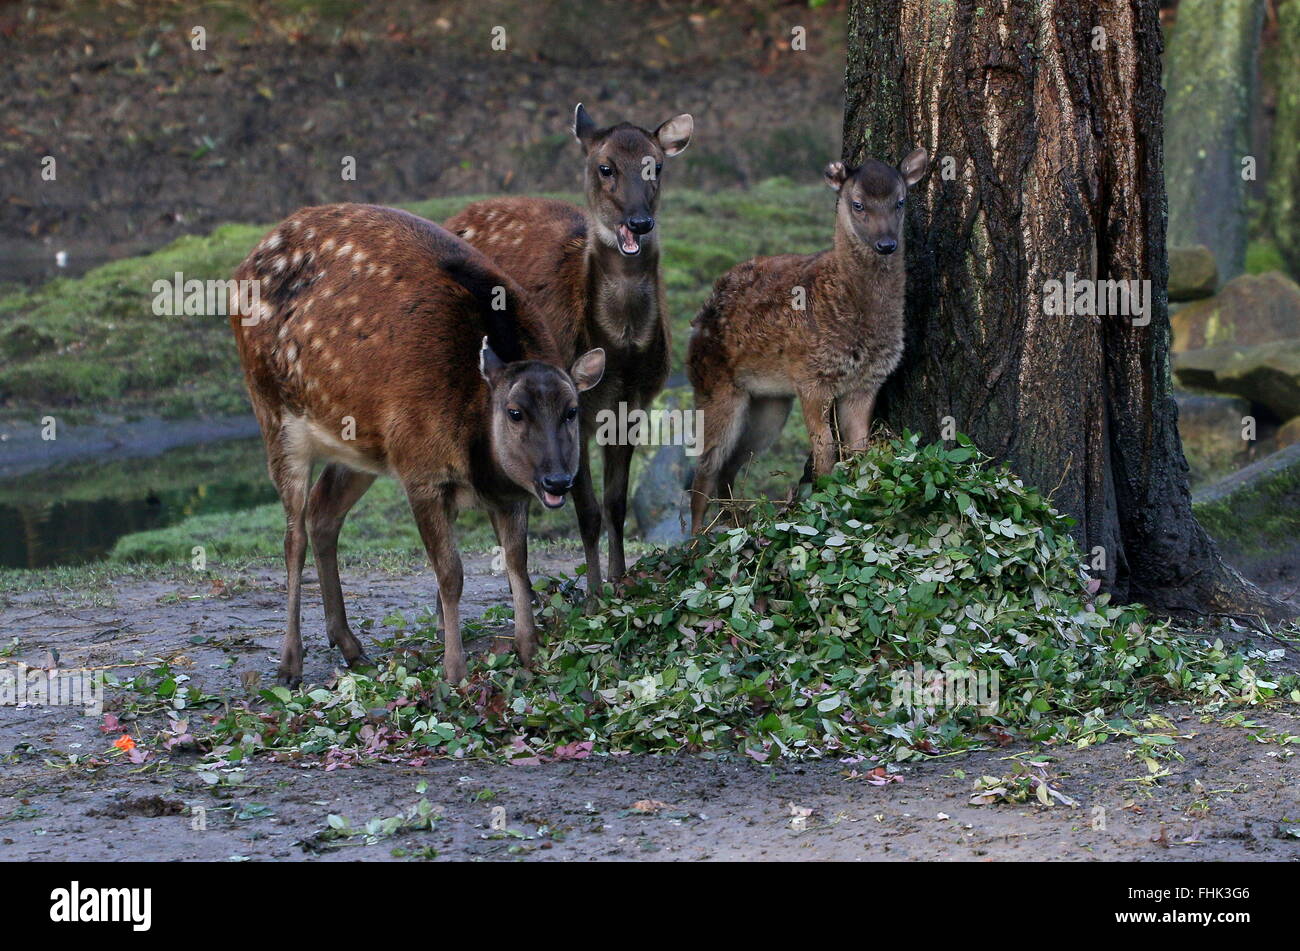 De la famille des Philippines ou Visayan spotted deer (Cervus alfredi, Rusa alfredi) ; moins de bois de cerf, biche et jeune faon Banque D'Images